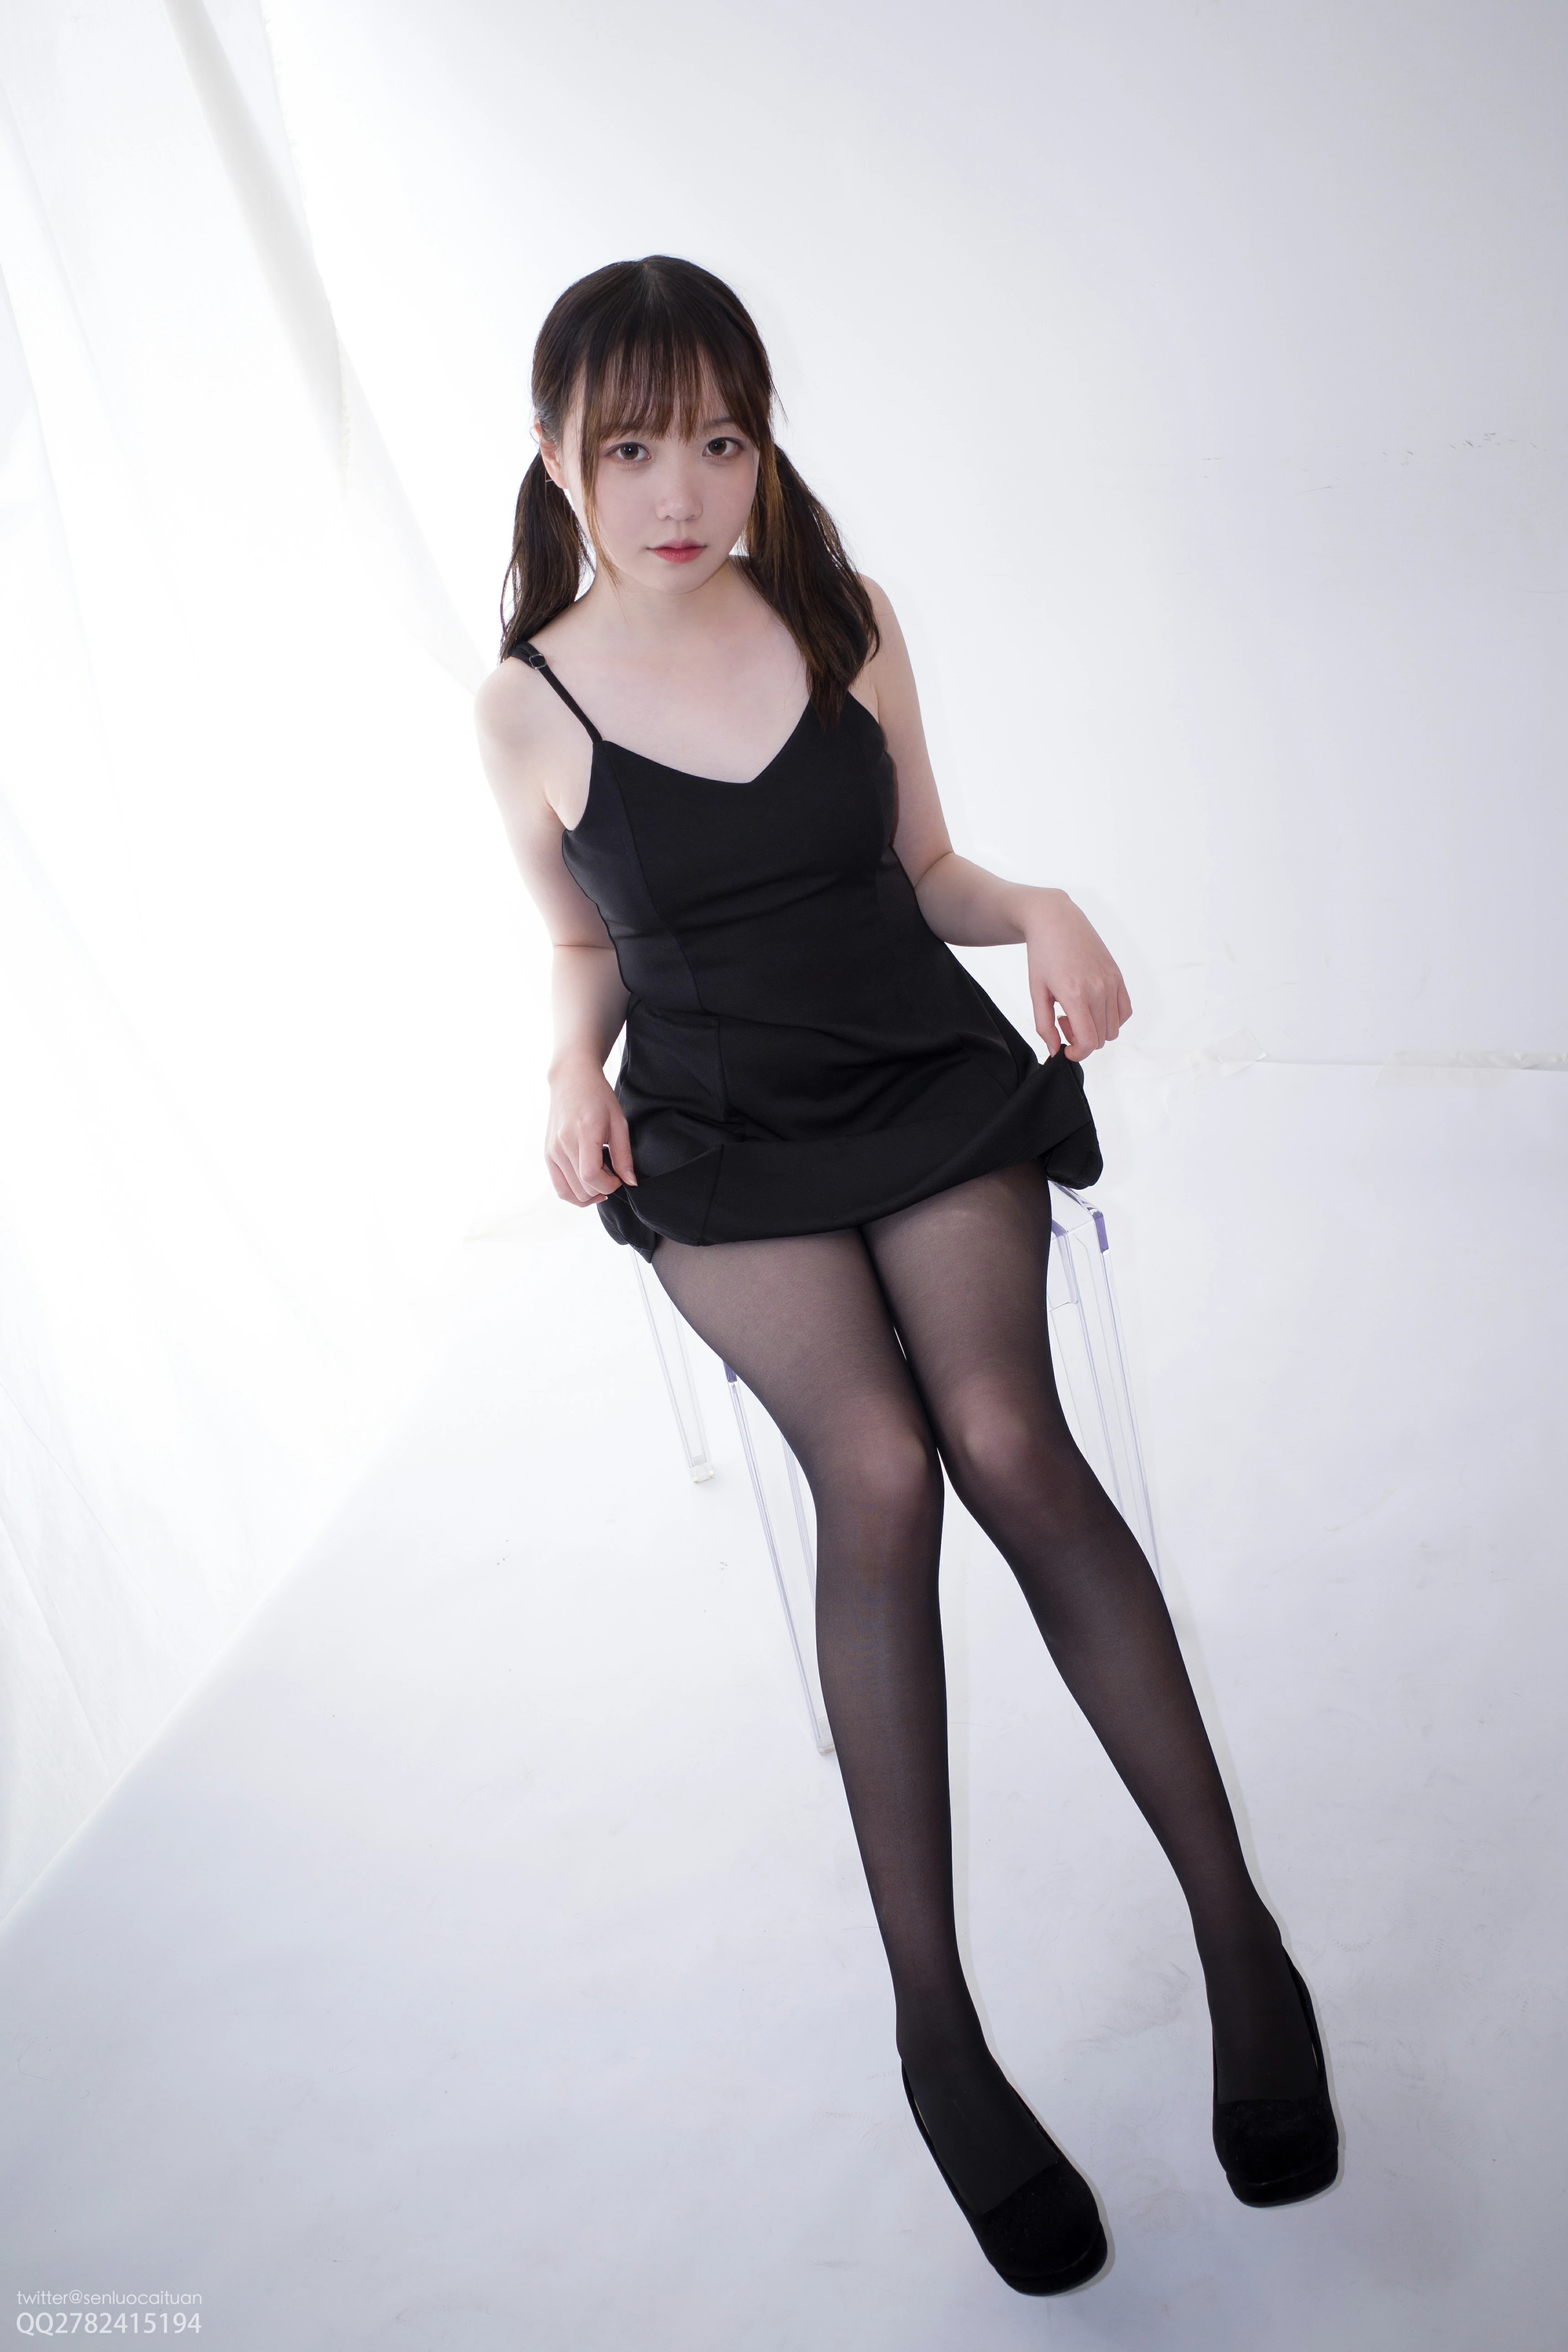 [森萝财团]KFUN-041 《黑涩现实》 Aika 黑色吊带连衣裙加黑色丝袜美腿性感私房写真集,